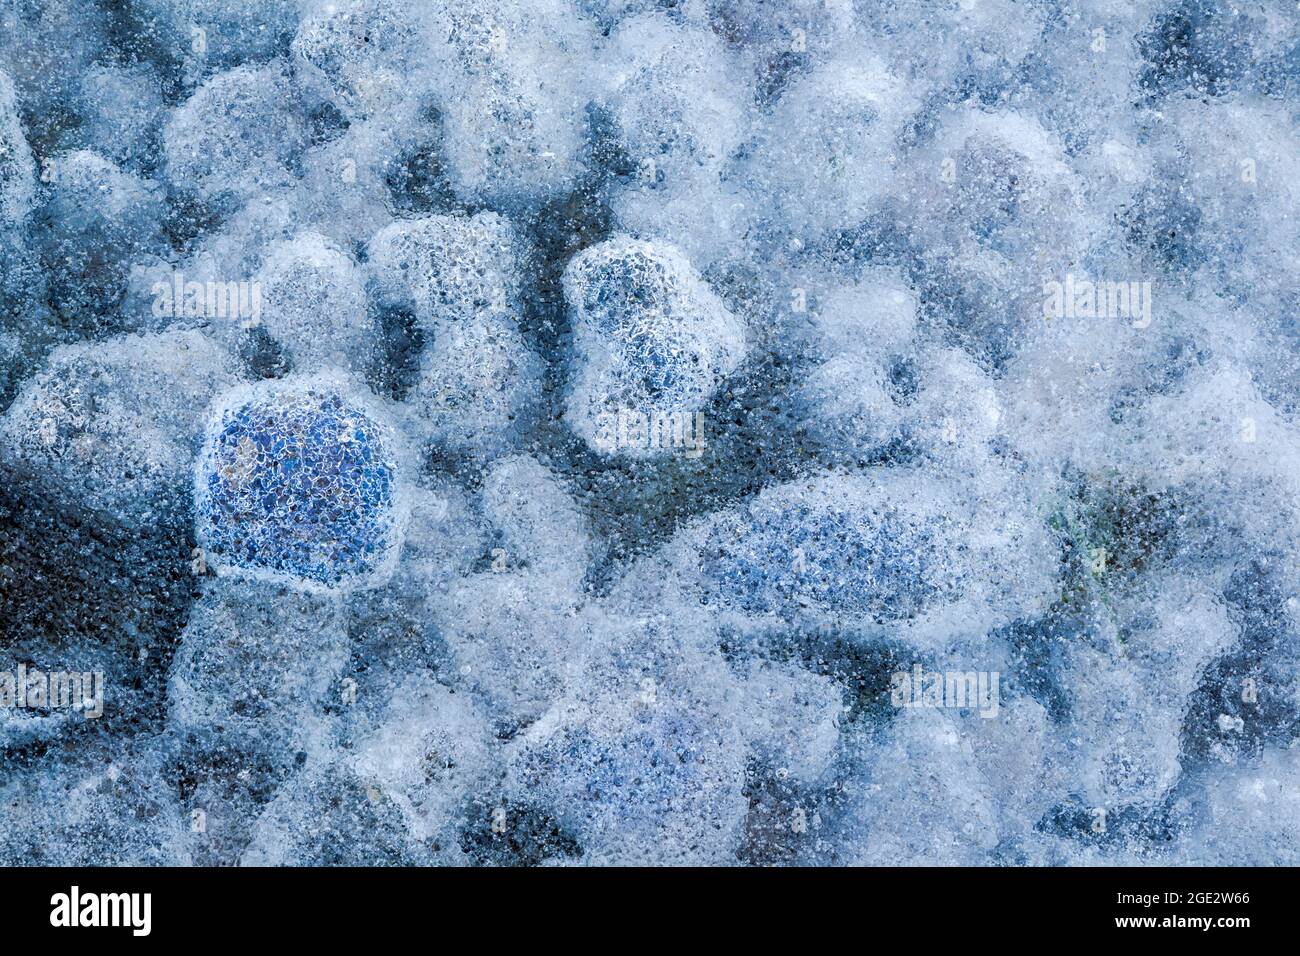 Eisverkapselung kleiner Steine und Luftblasen, die einen mehrfarbigen und stark texturierten Effekt erzeugen Stockfoto